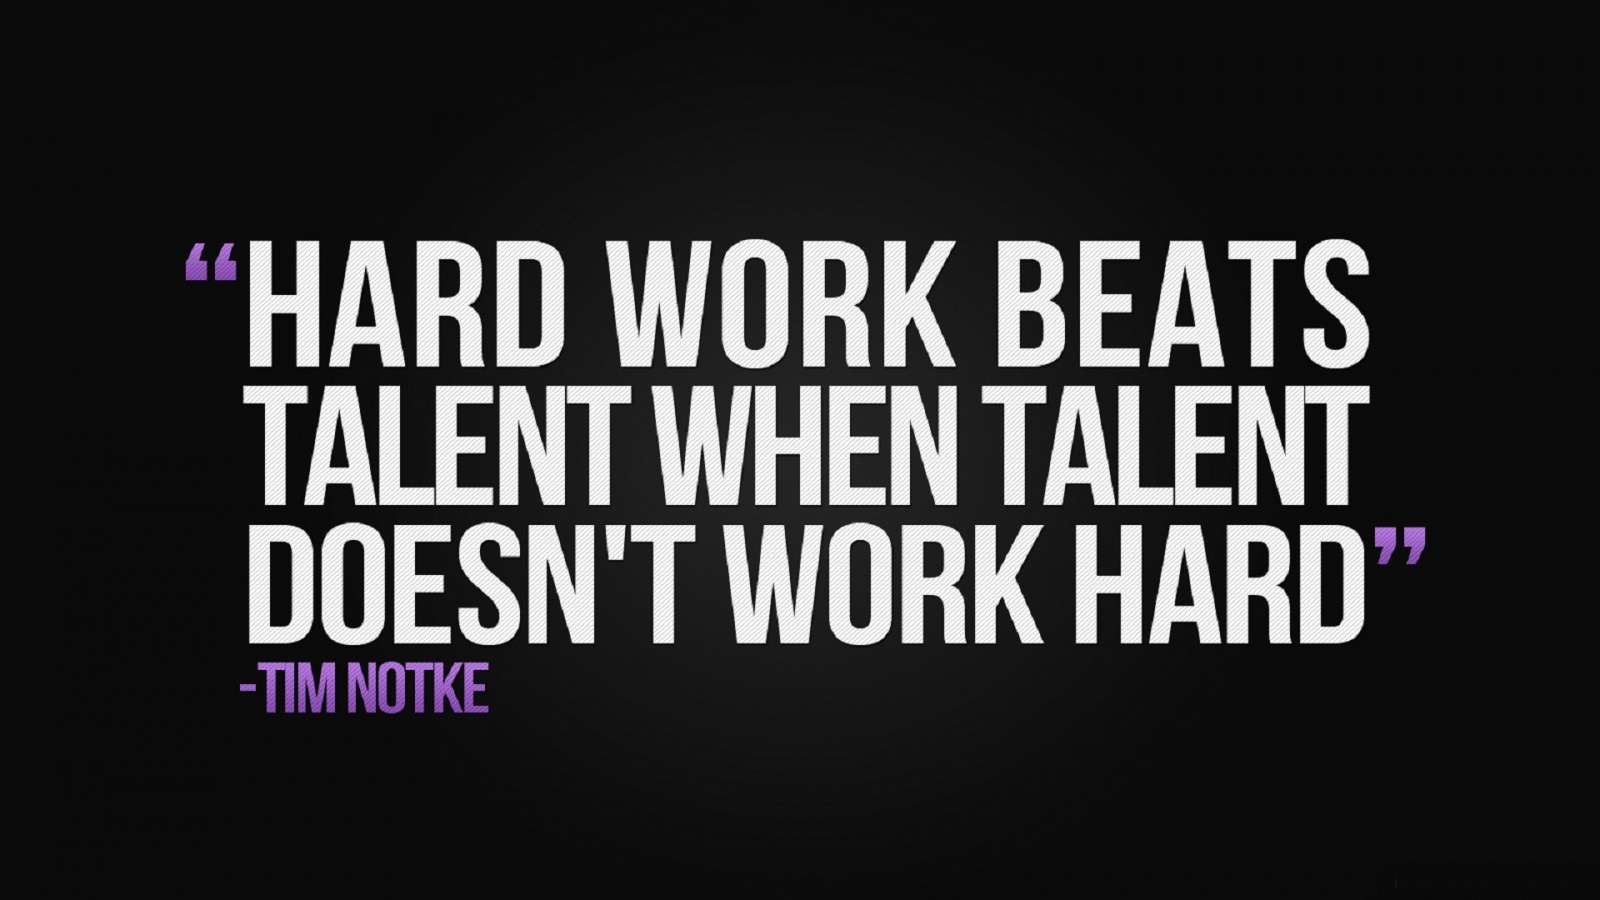 Hard work beats talent when talent doesn't work hard. Tim Notke